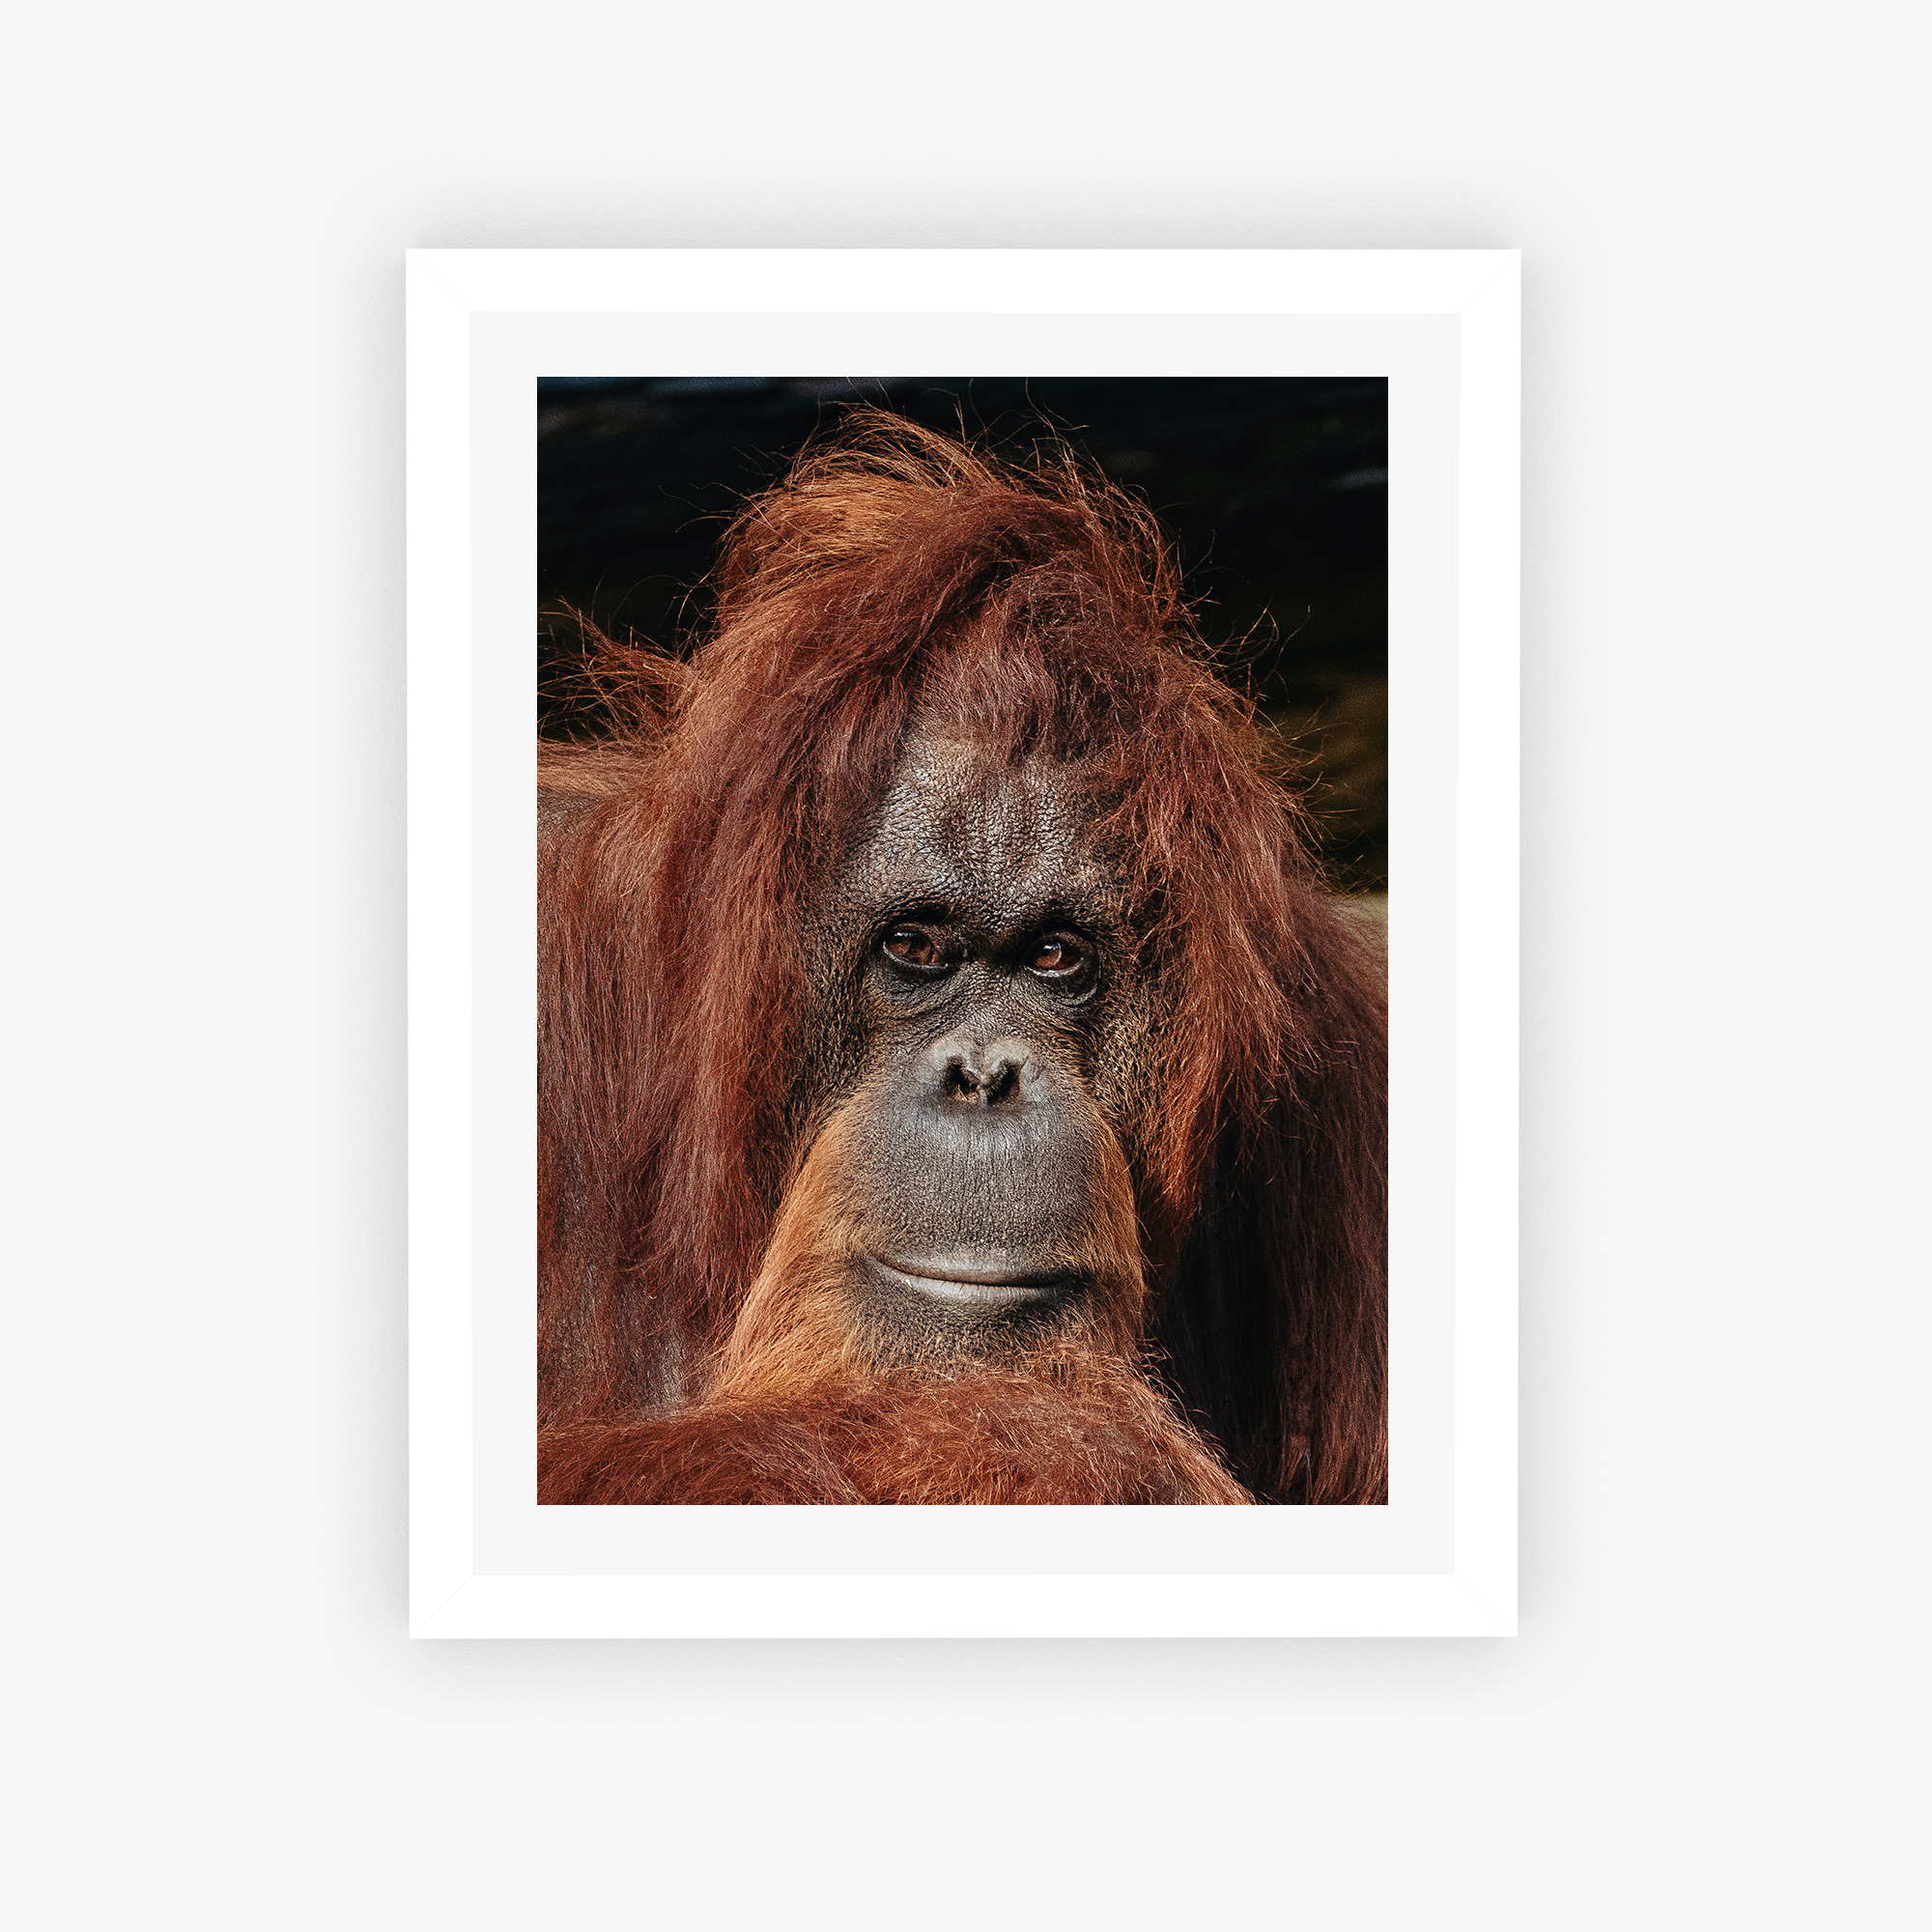 Orangutan's Gaze Poster